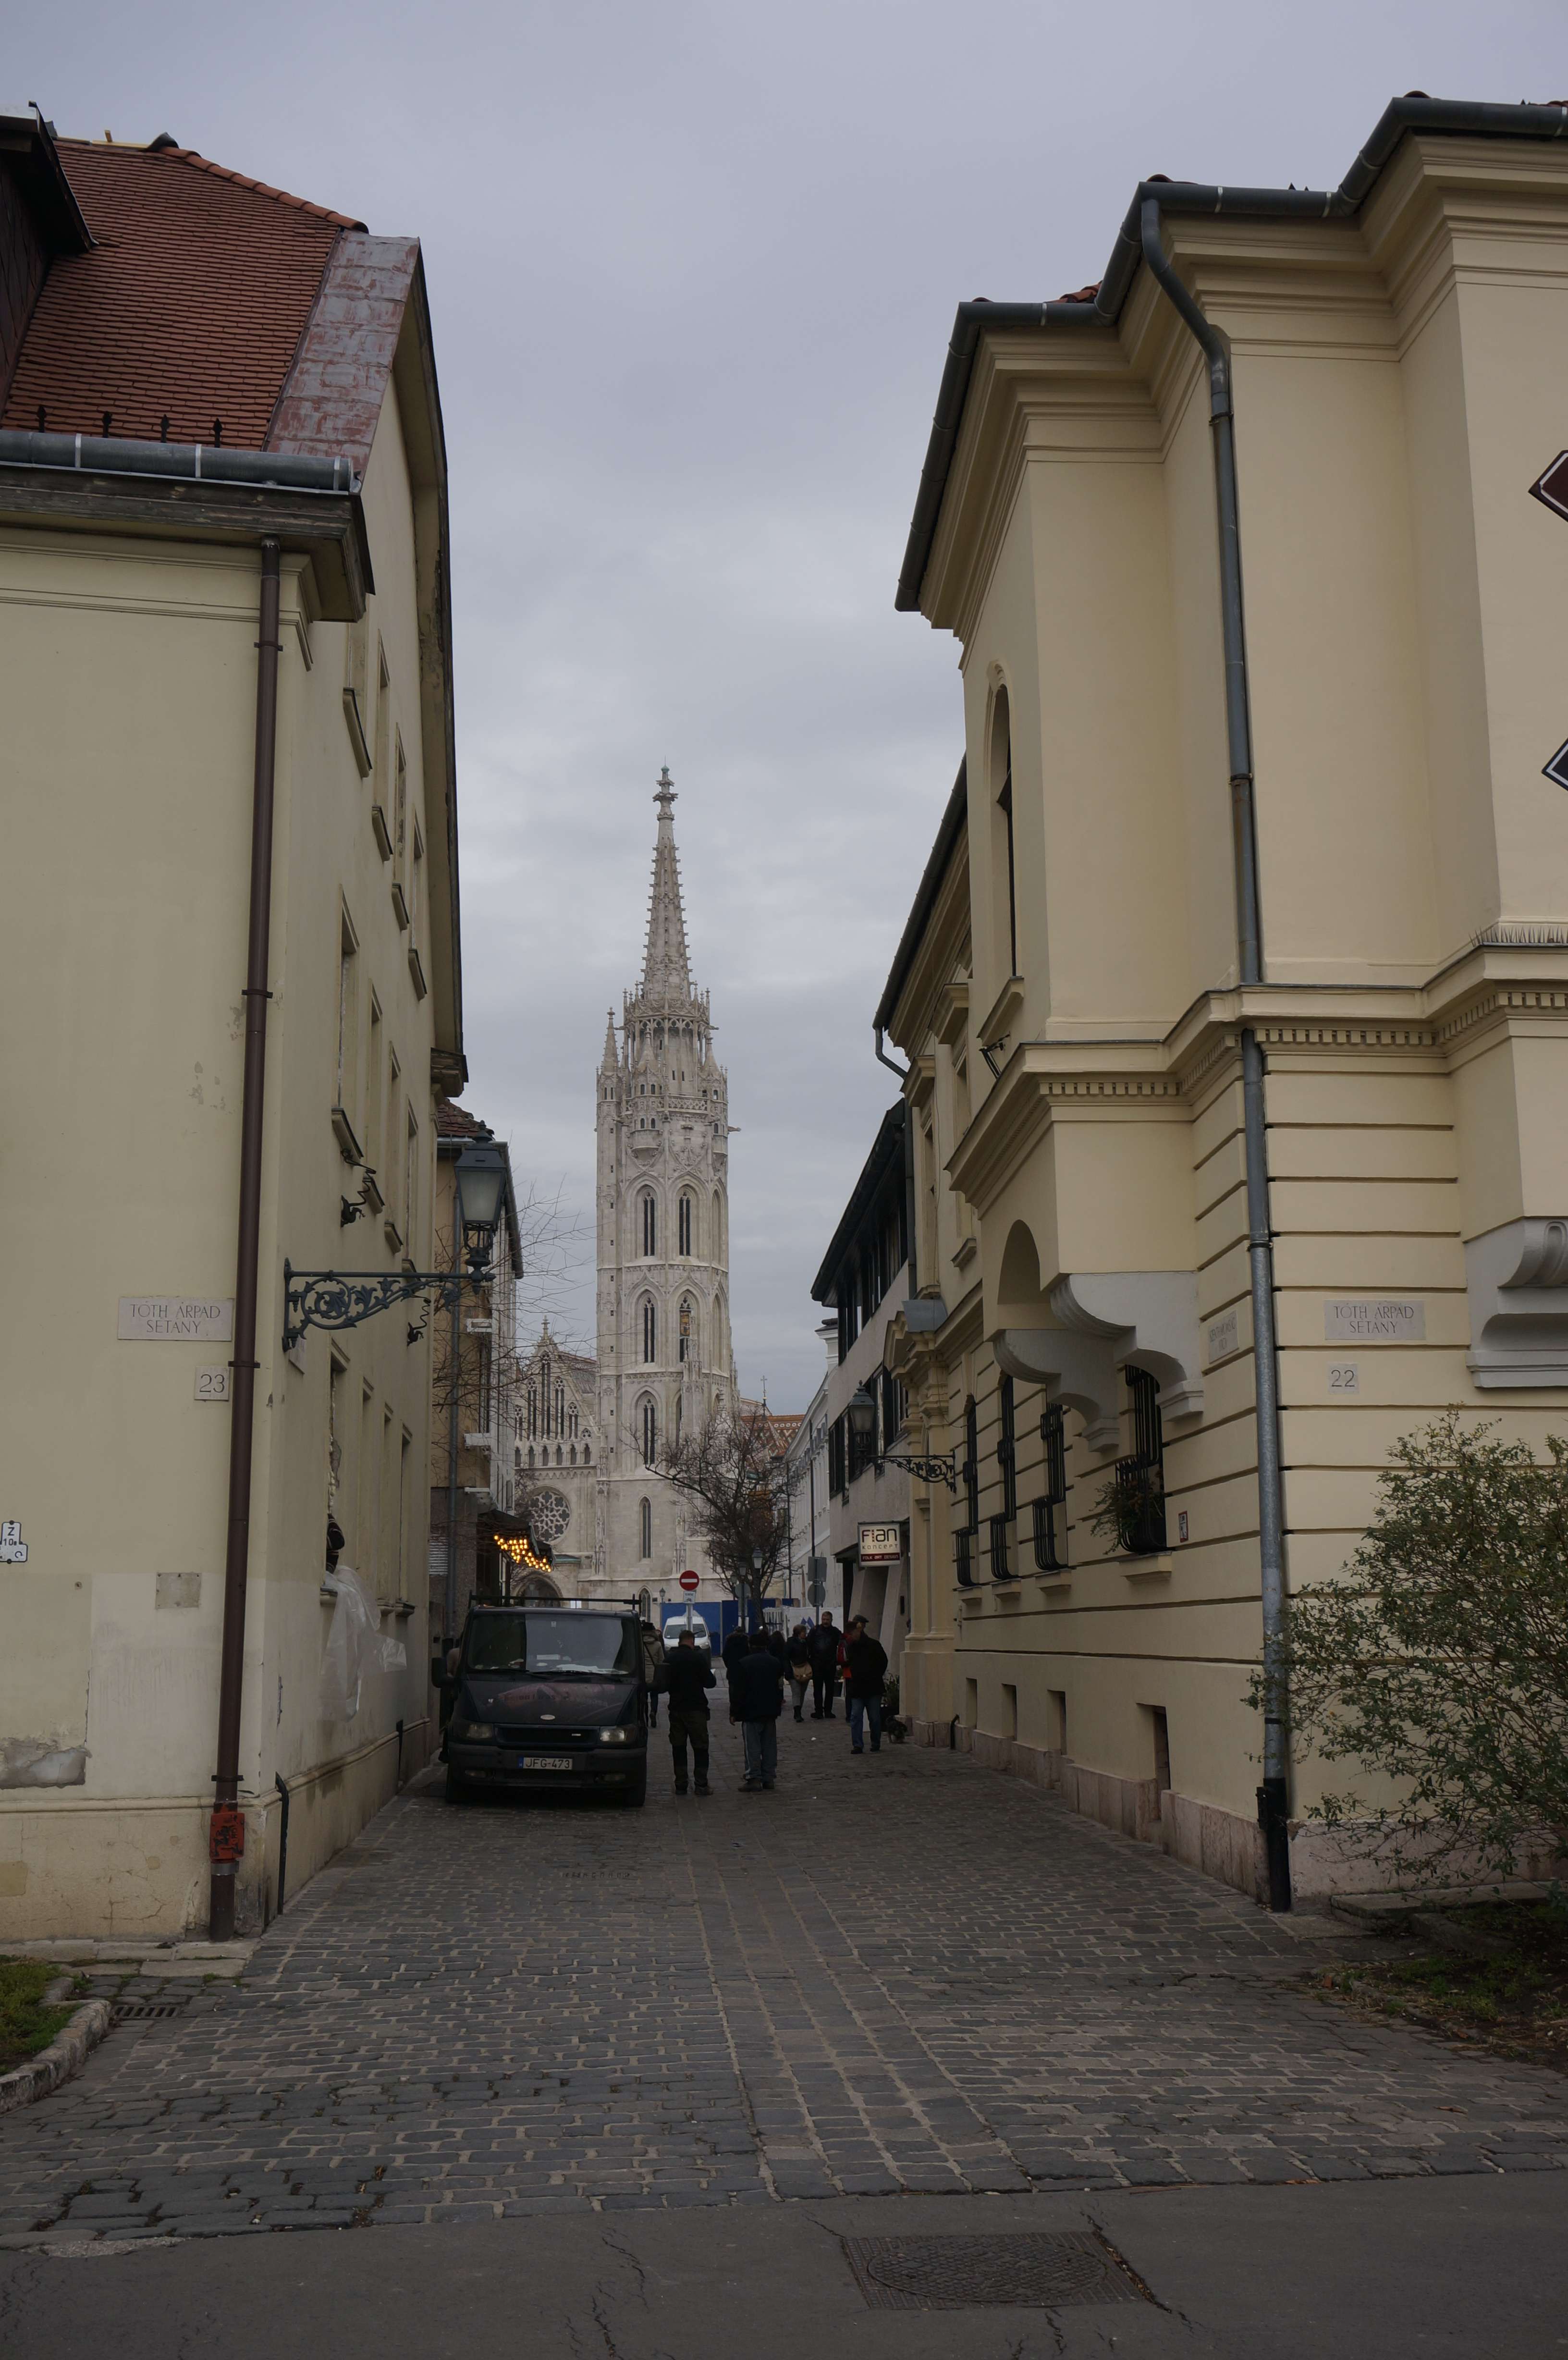 Praga, Viena y Budapest en 1 semana: Diciembre de luces e historia - Blogs de Europa Este - Dia 6 - Budapest: Colina de Buda, parte de Pest y Ruin Bar (5)